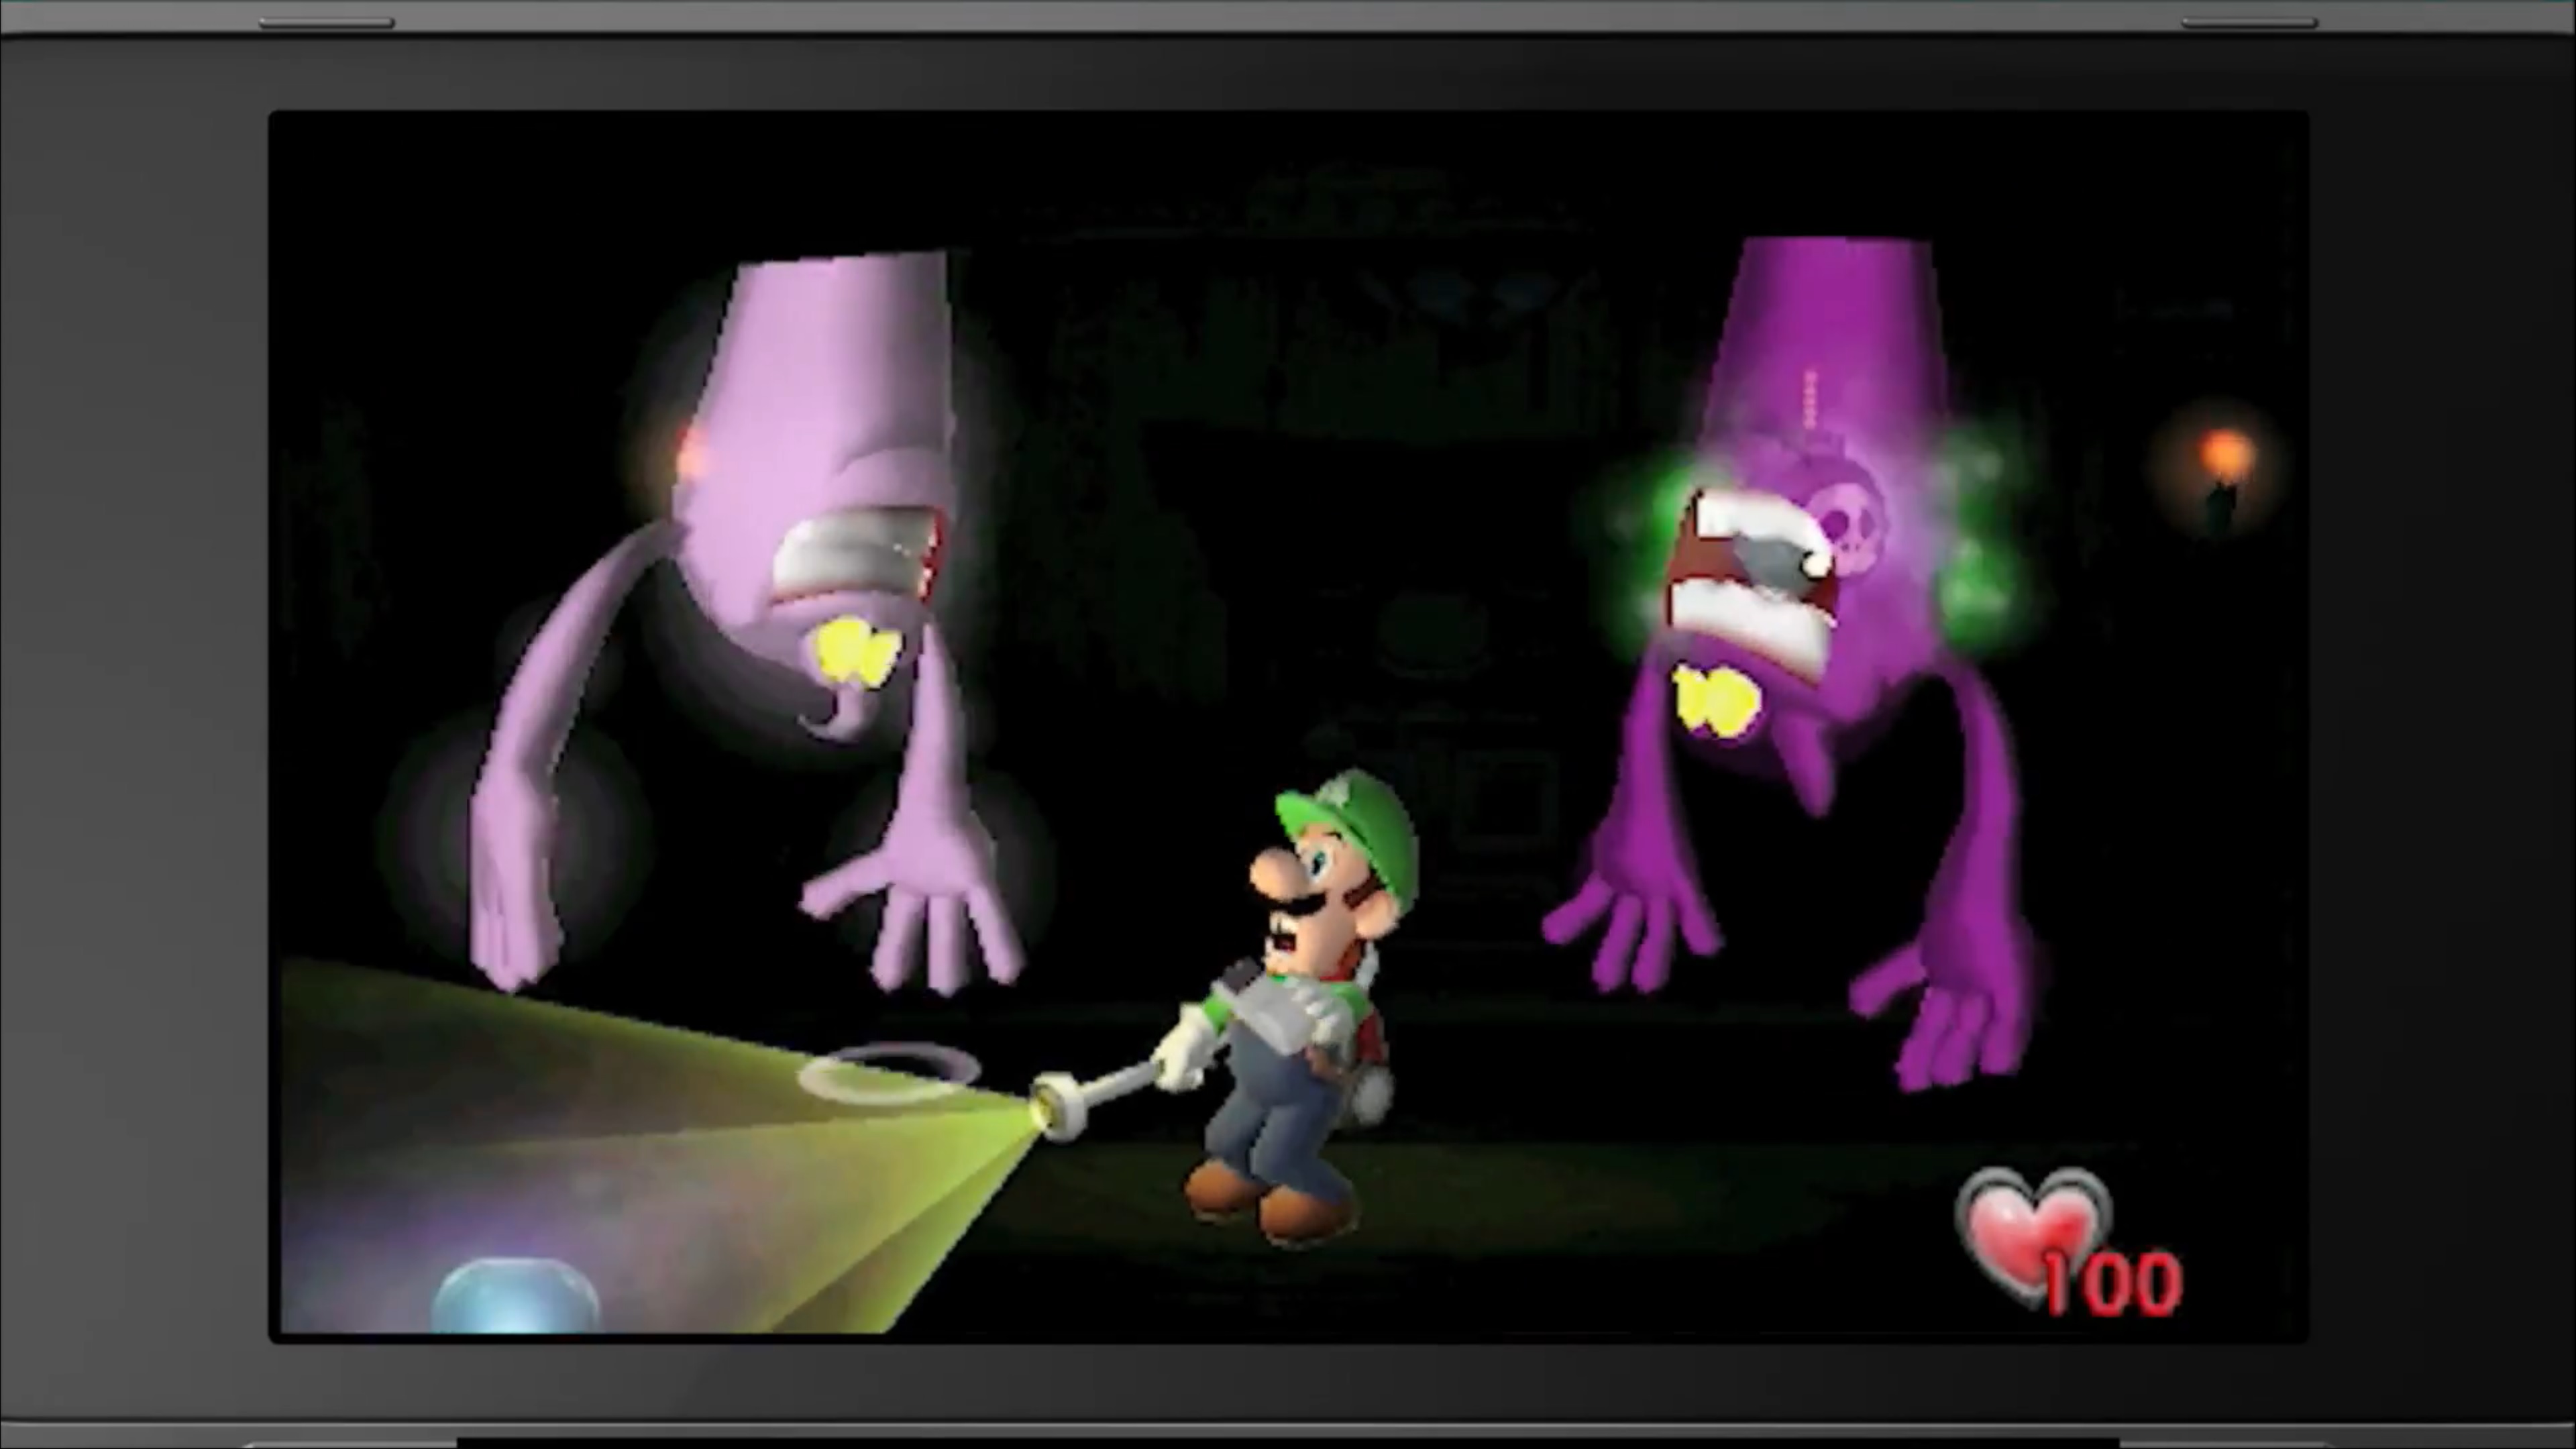 Luigi's Mansion: Dark Moon Switch Remaster Revealed